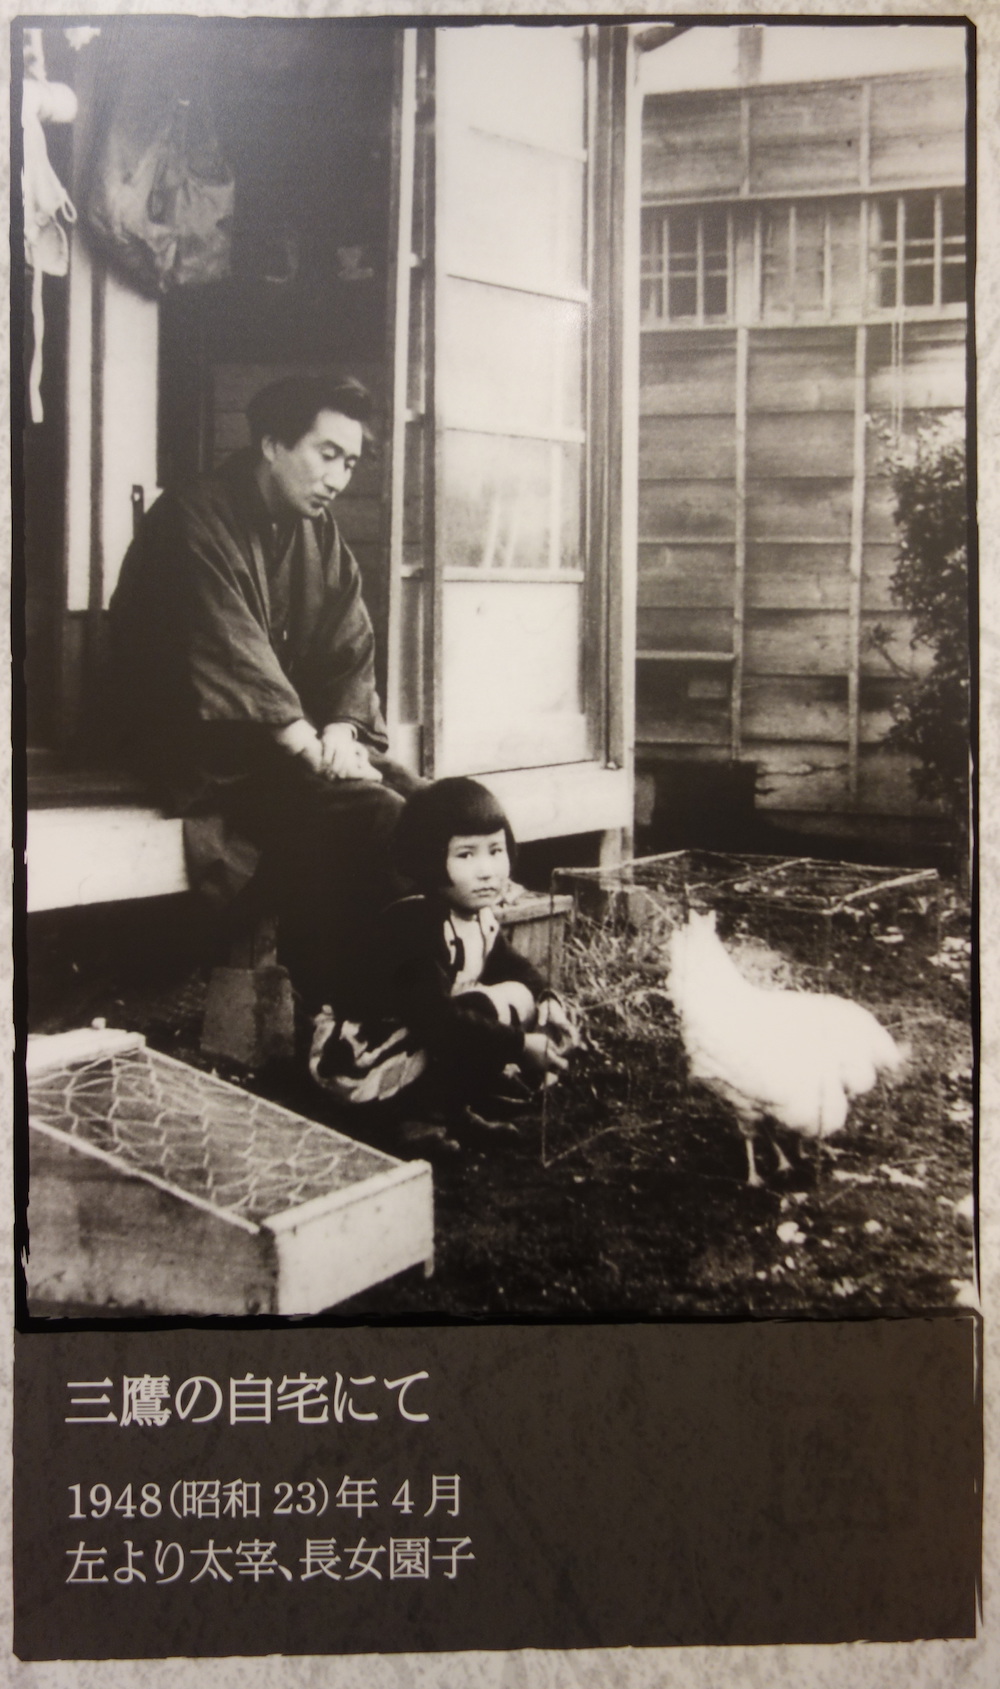 Vater und Tochter auf der Holzveranda eines Hauses, ein Huhn im Garten.